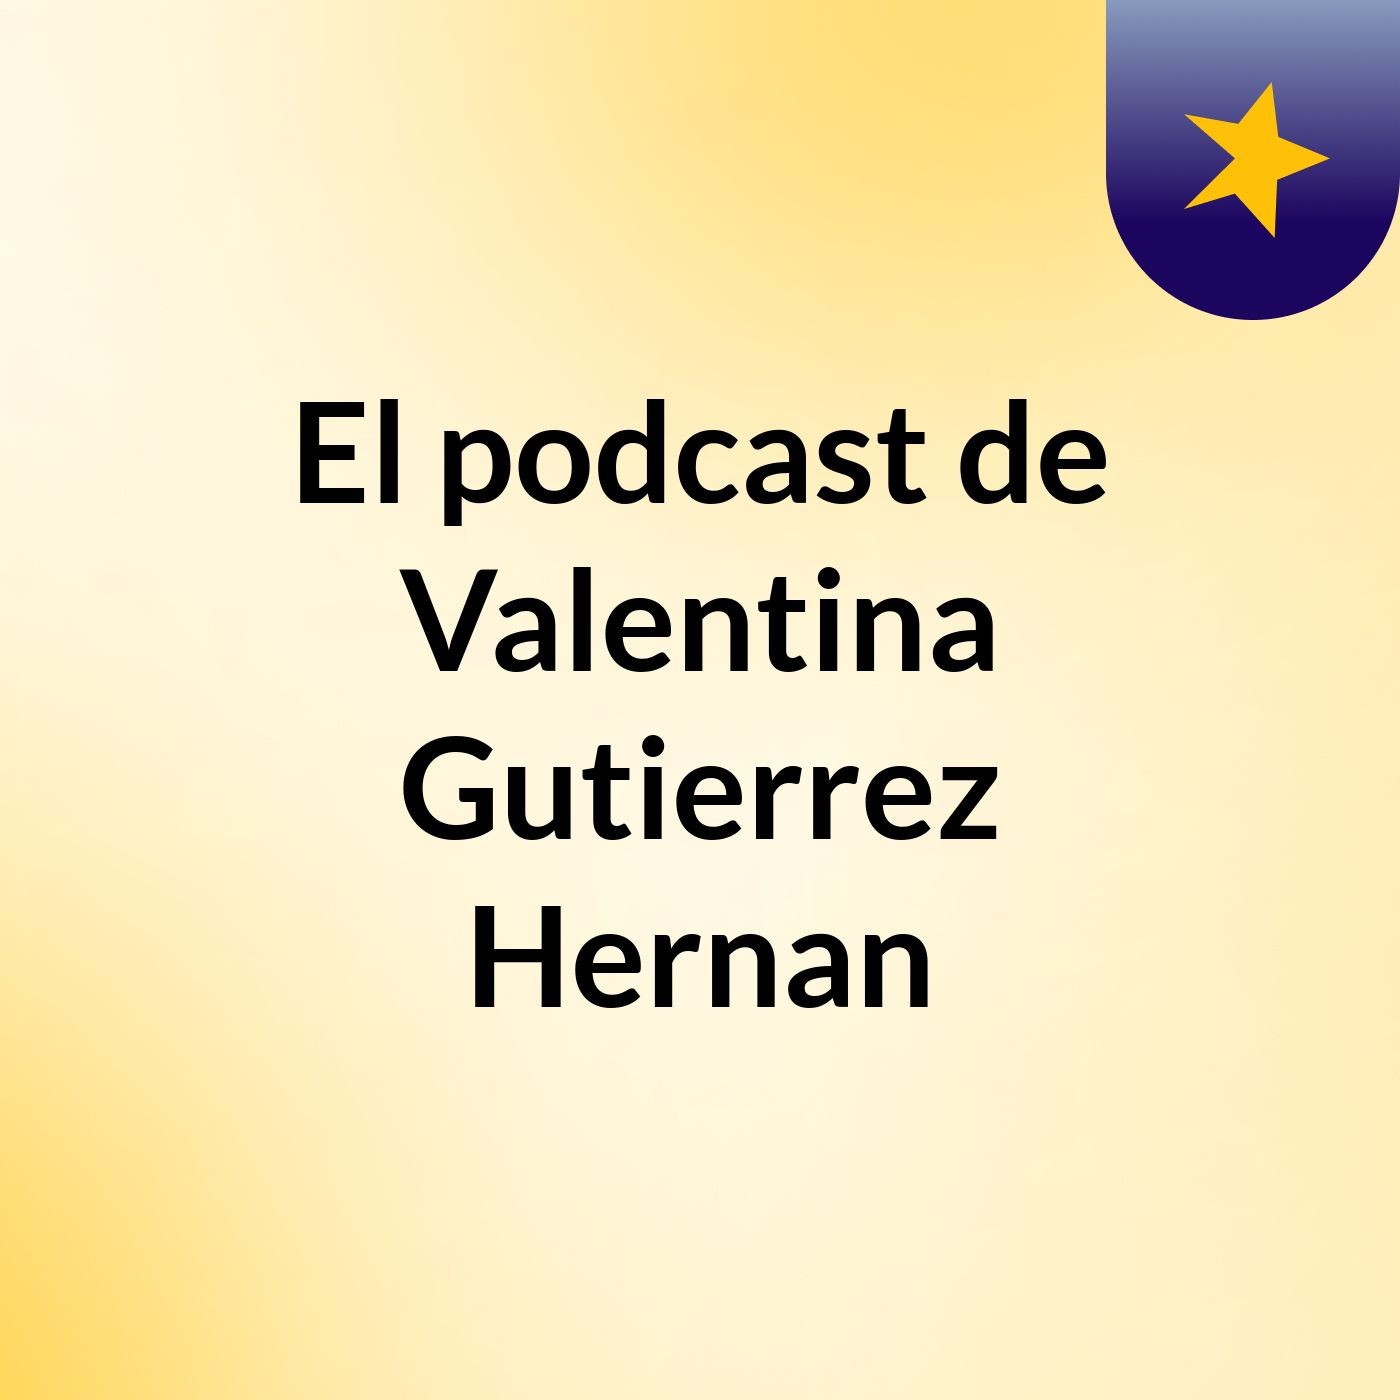 Episodio 8 - El podcast de Valentina Gutierrez Hernan